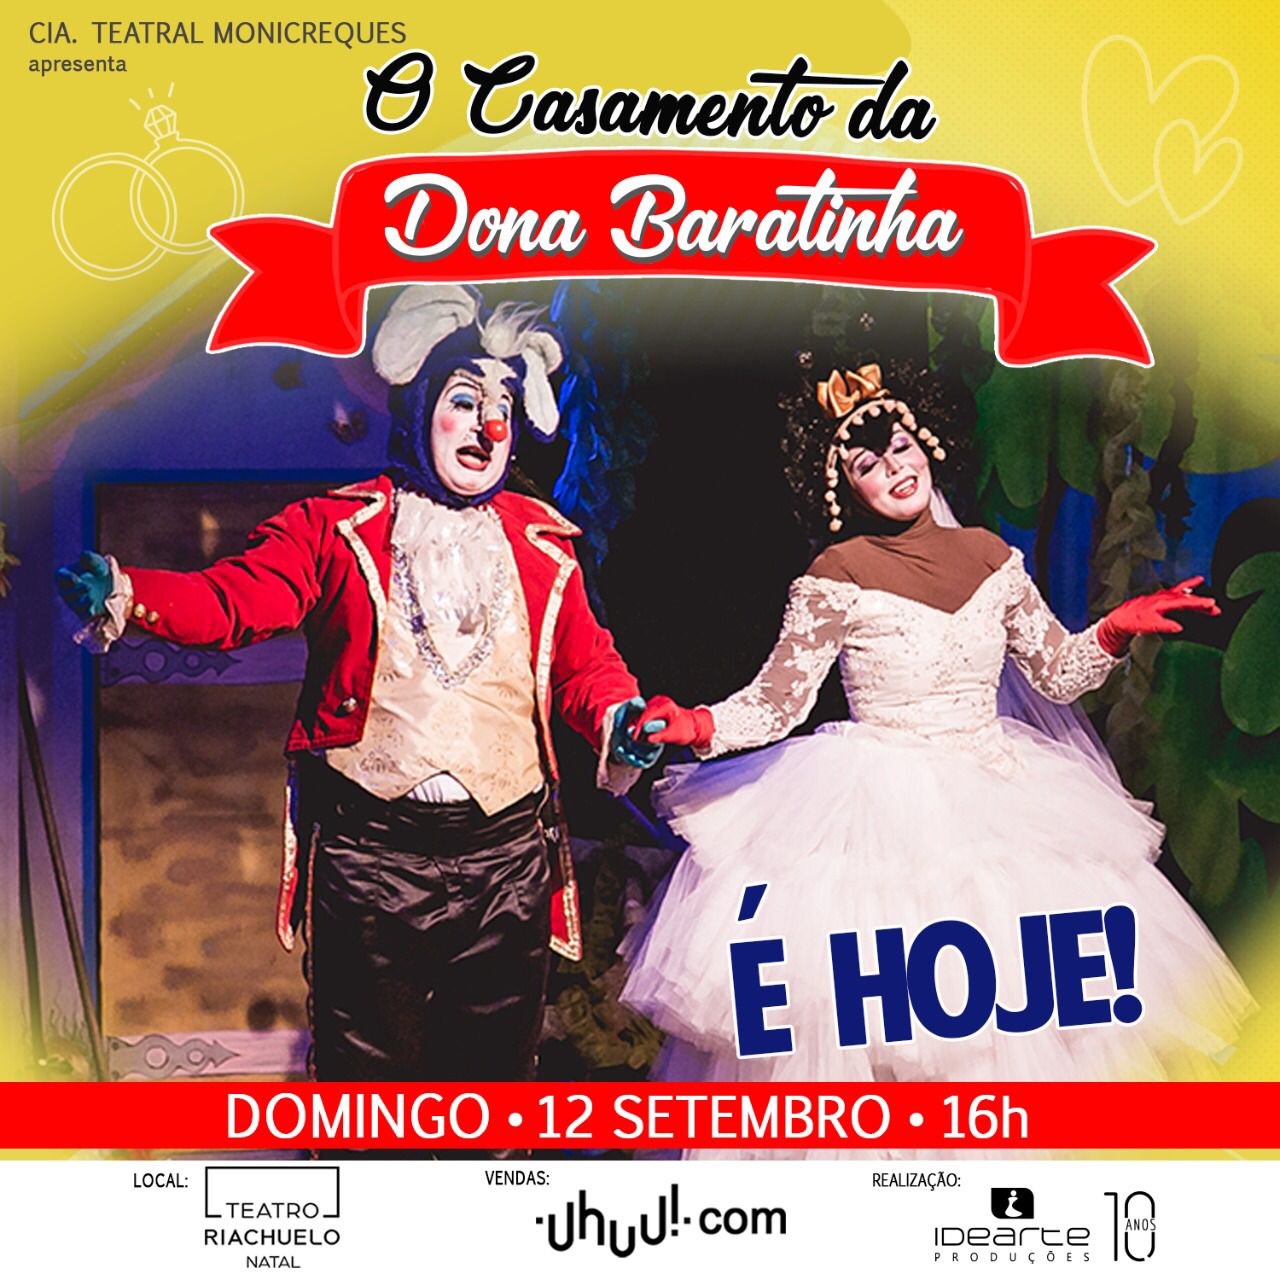 Teatro Riachuelo traz espetáculo "O Casamento de Dona Baratinha"